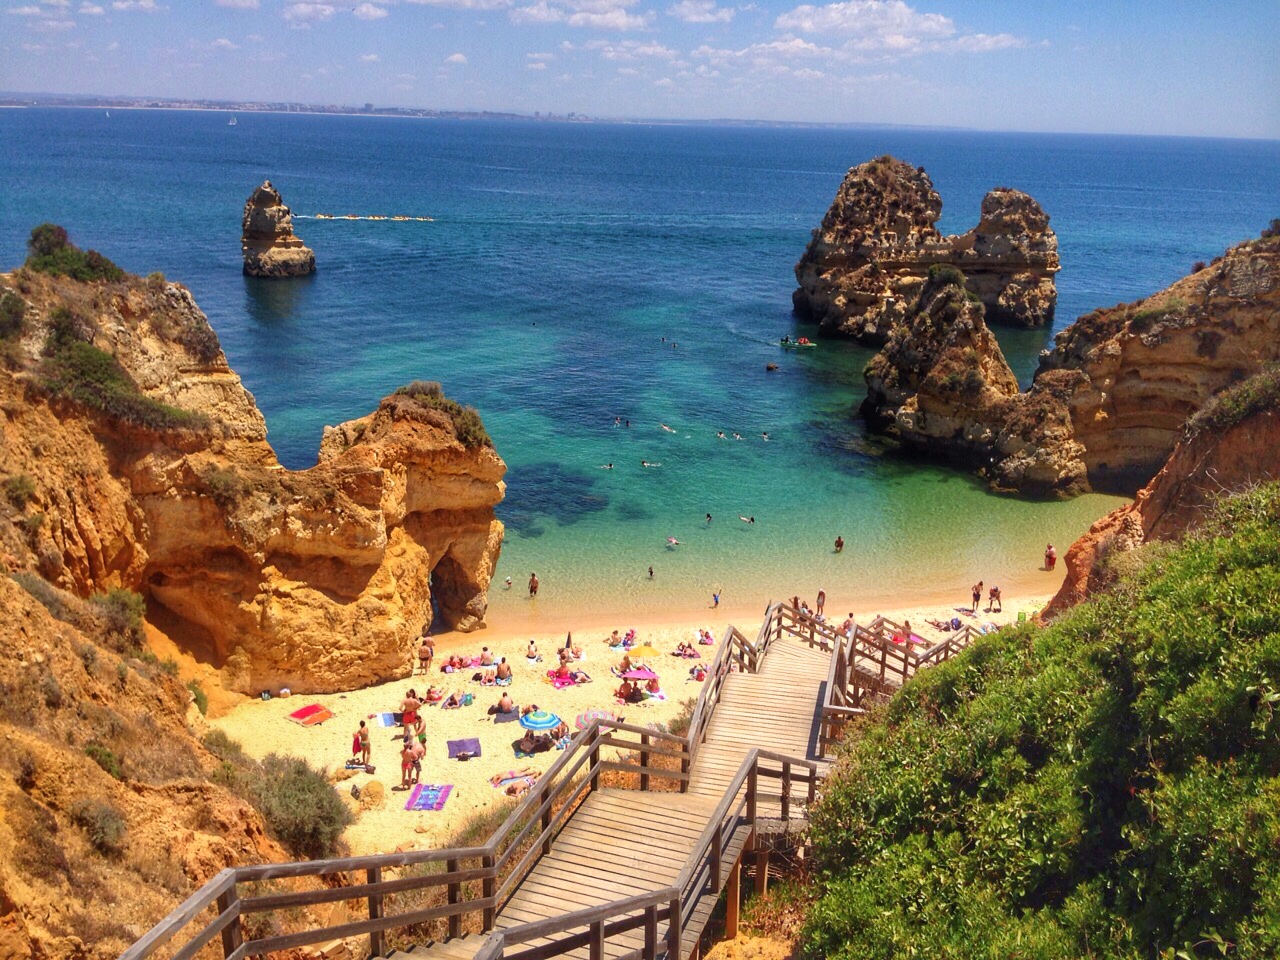 ideias de destinos para o verão europeu - algarve portugal - lala rebelo